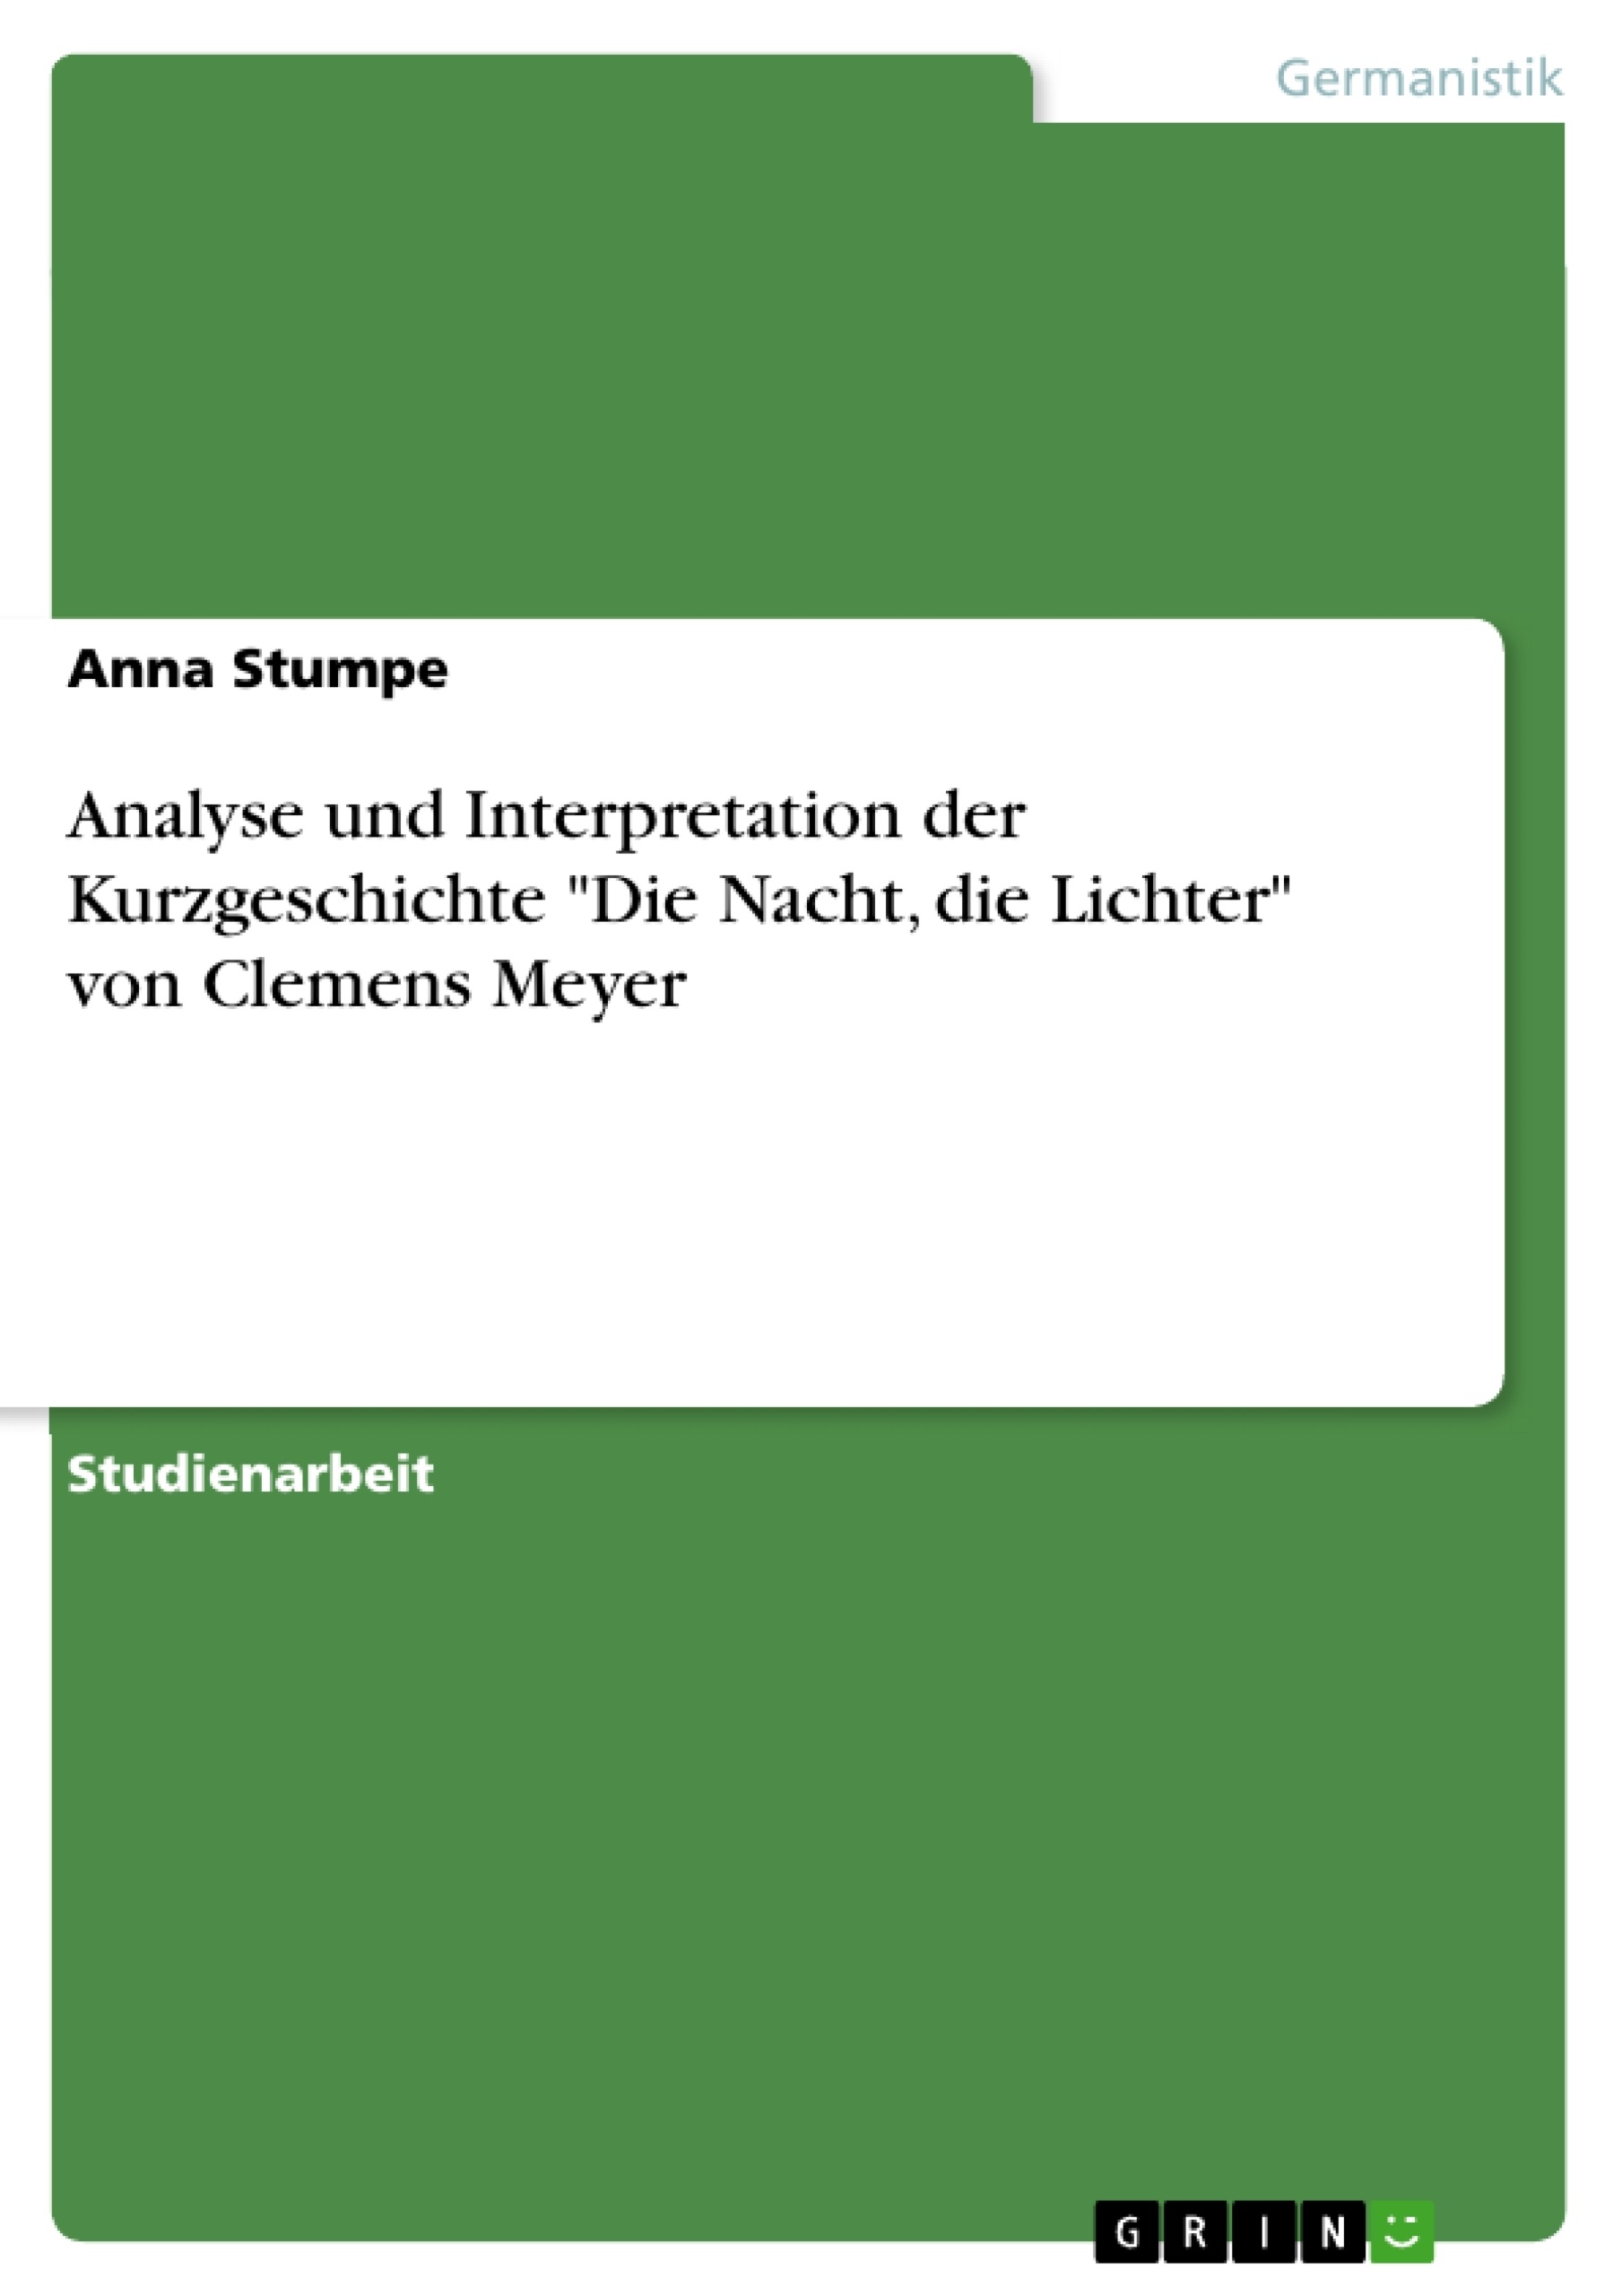 Titre: Analyse und Interpretation der Kurzgeschichte "Die Nacht, die Lichter" von Clemens Meyer